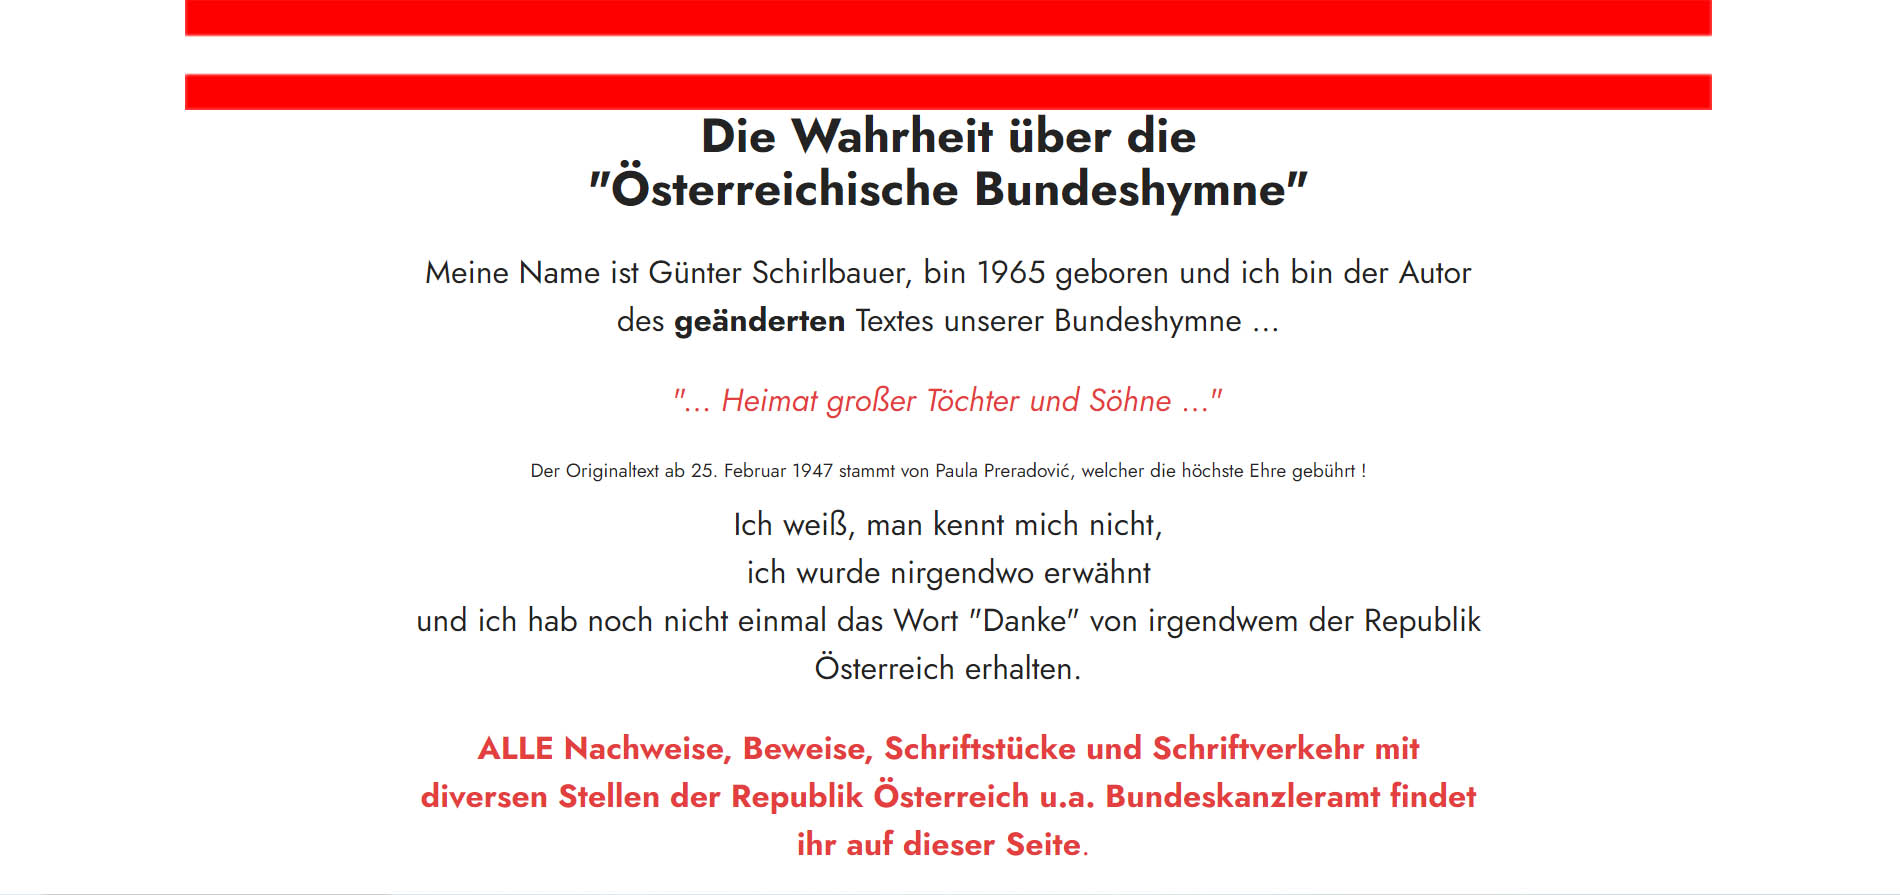 Die Wahrheit über die Österreichische Bundeshymne